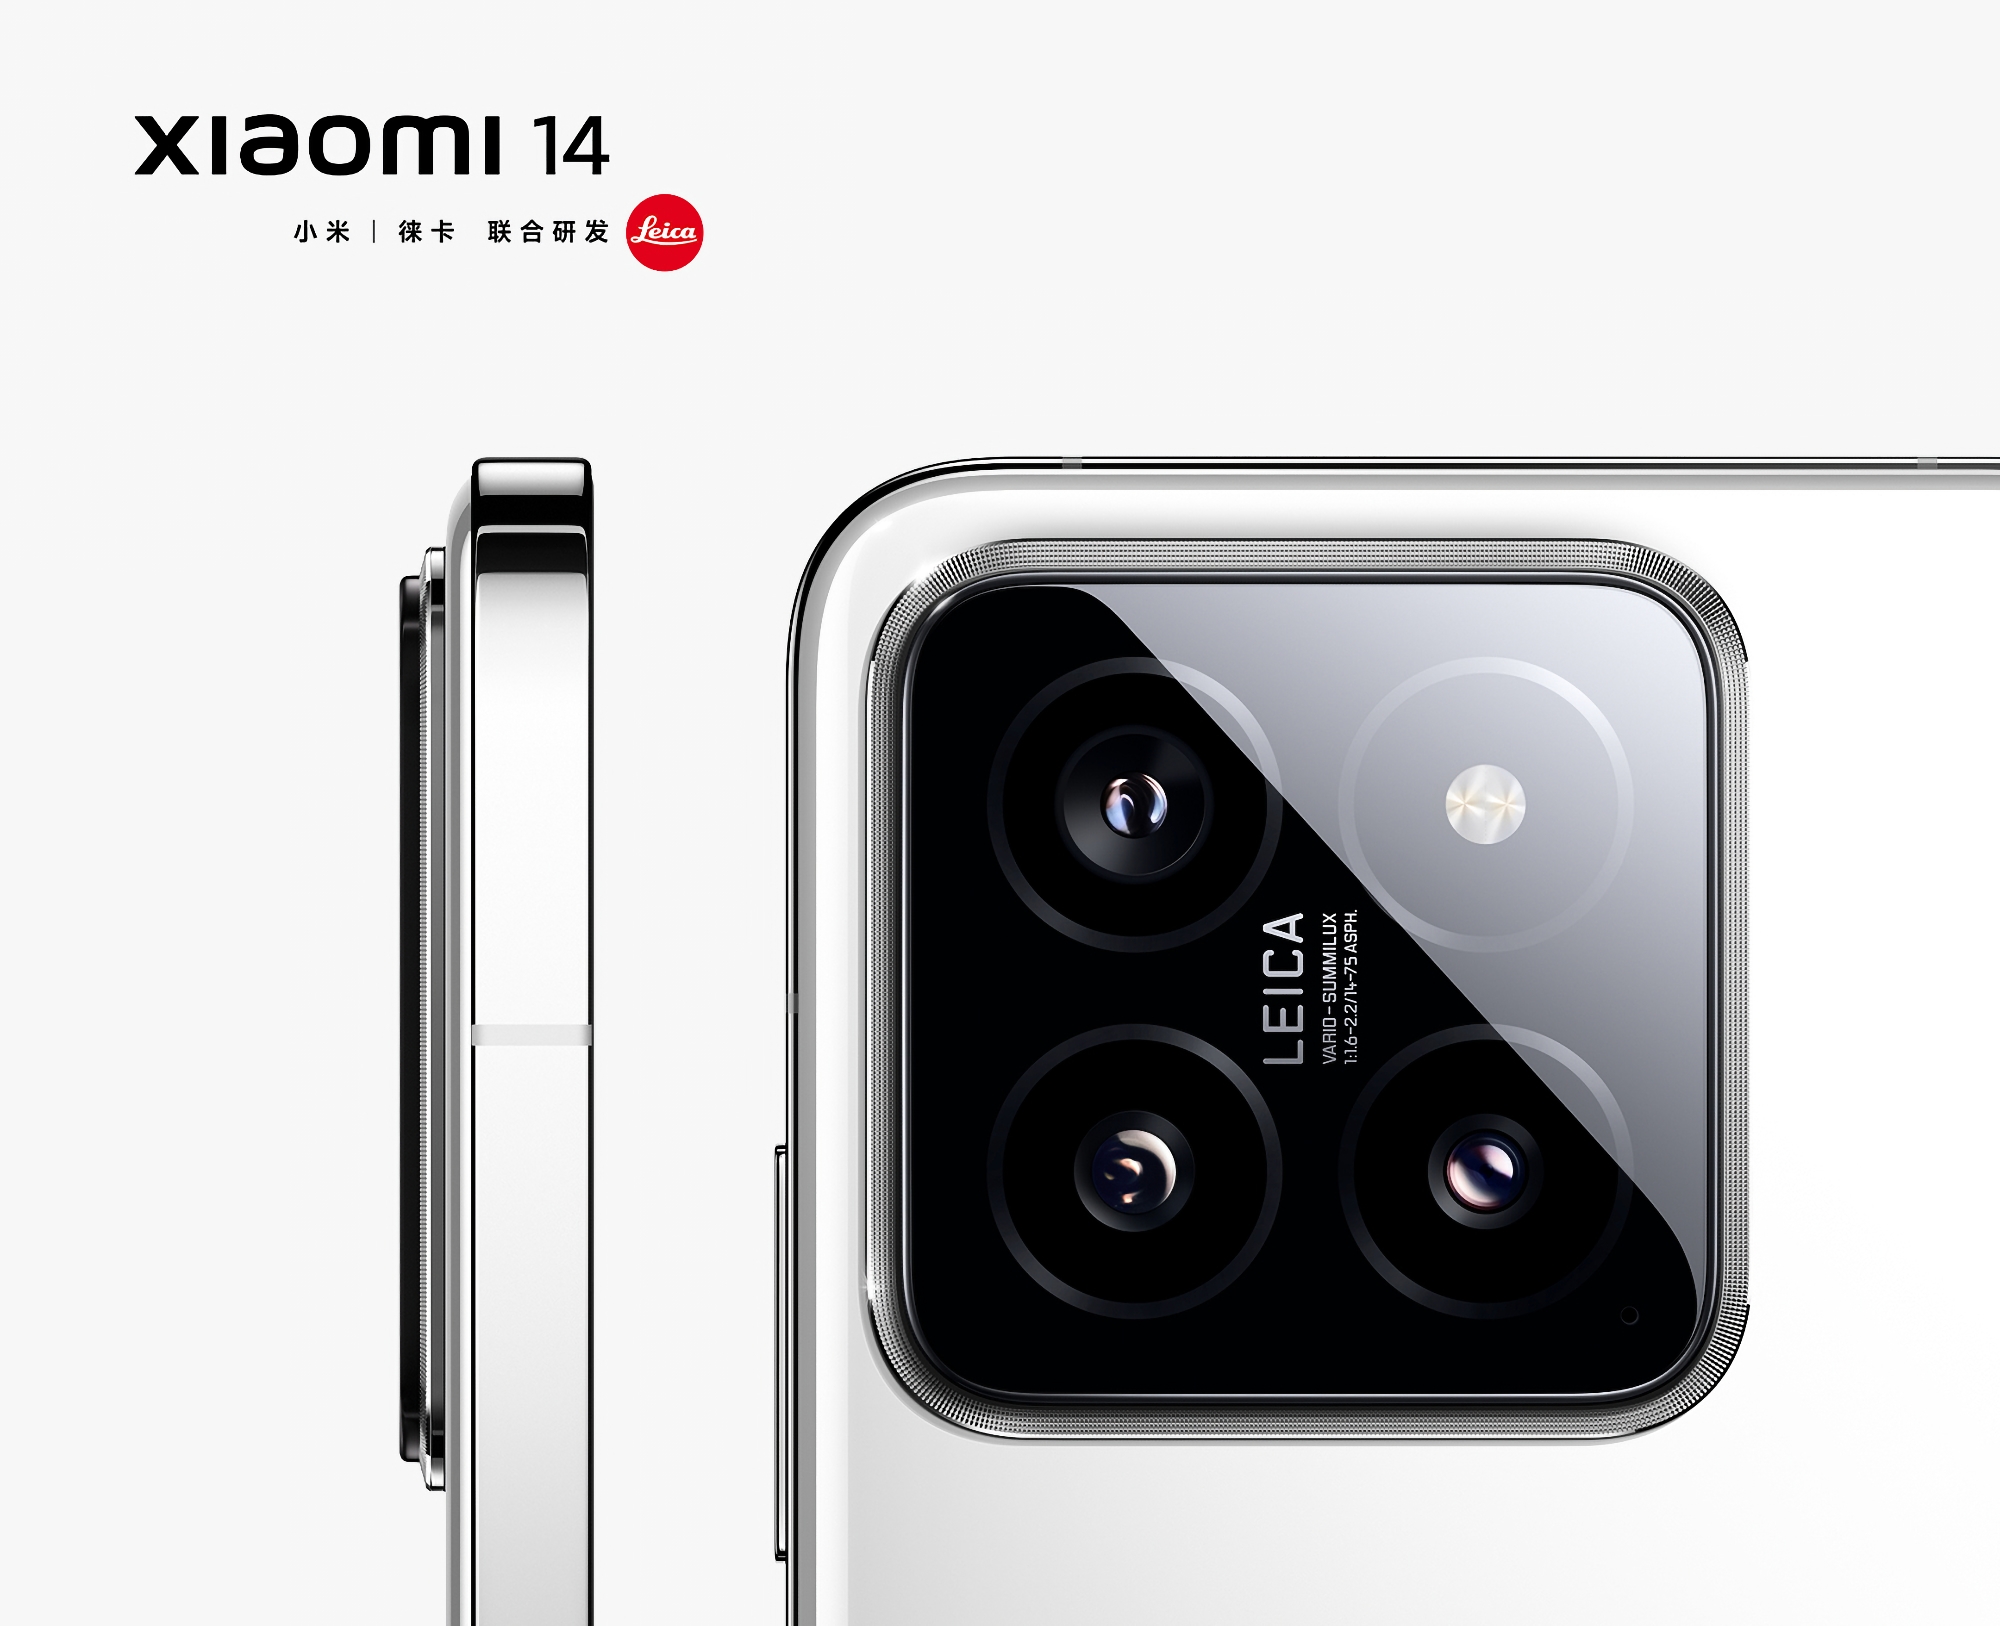 Sin esperar al anuncio: Xiaomi ha revelado imágenes de alta calidad del buque insignia Xiaomi 14